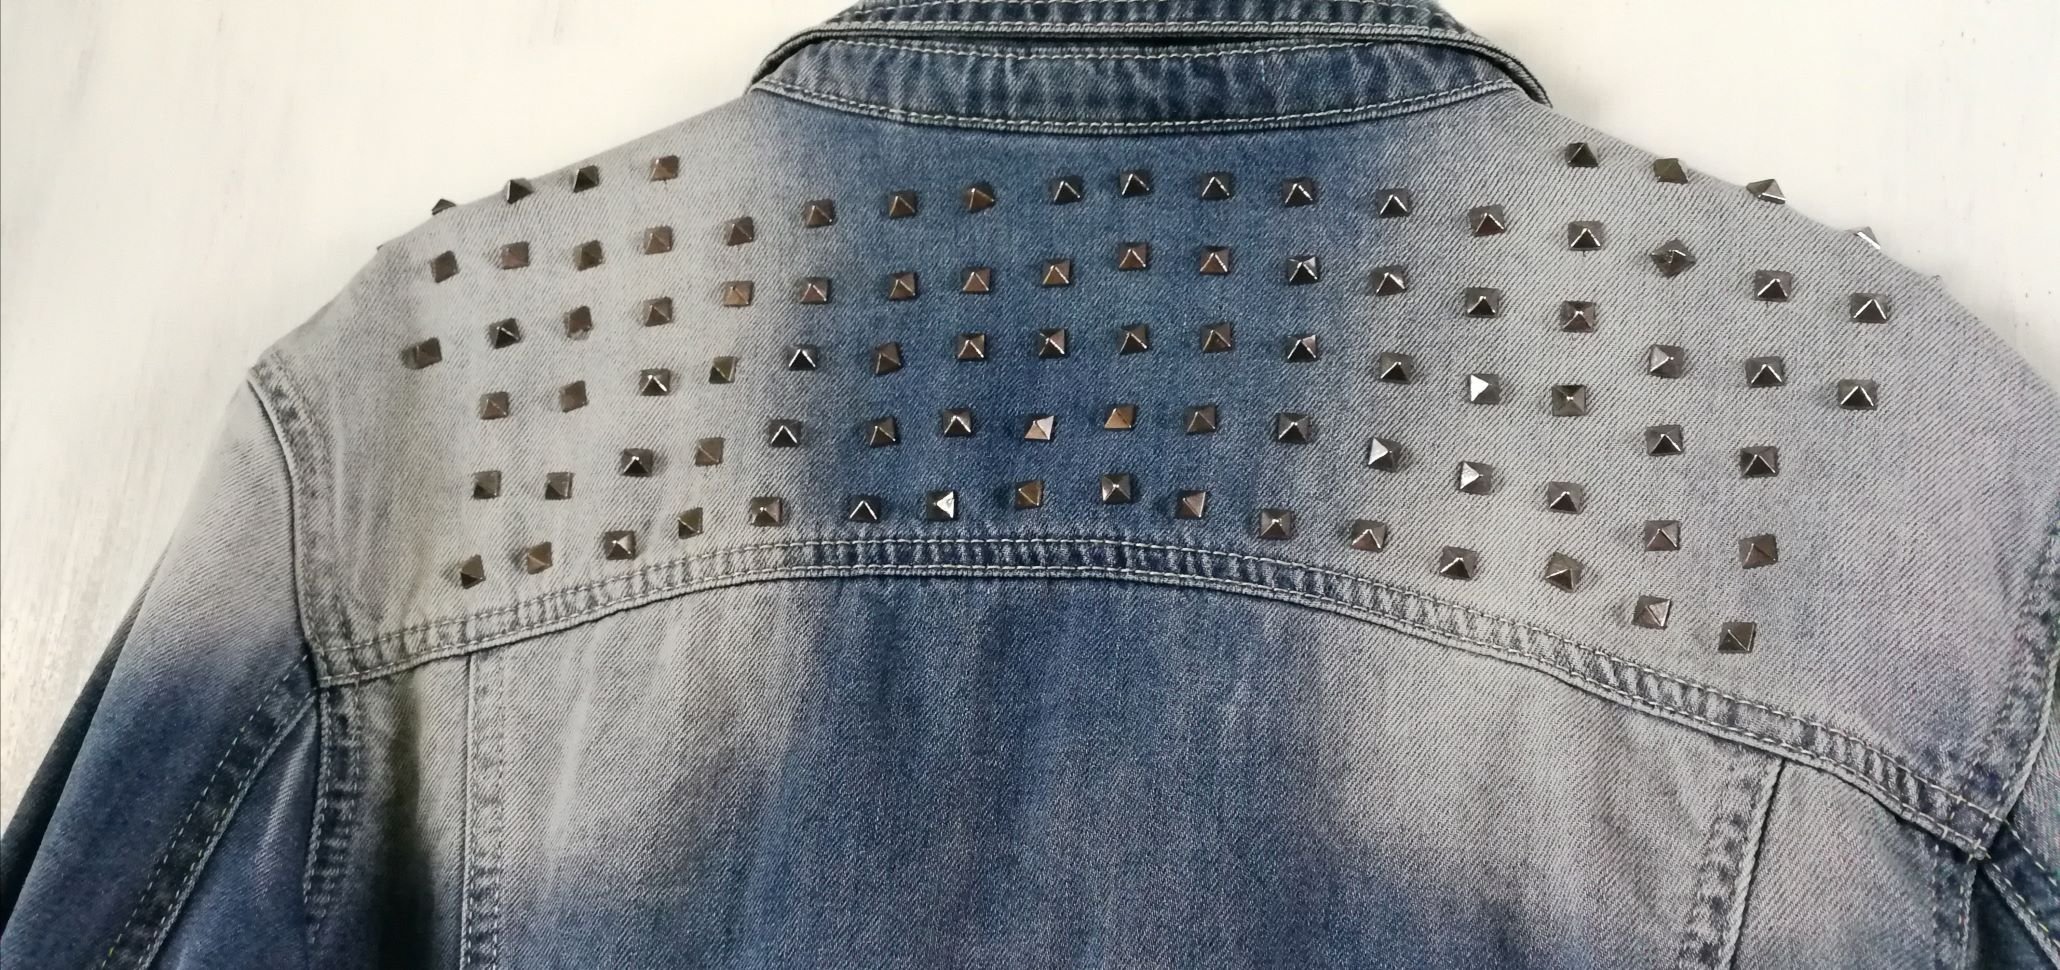 Jeans Jacke Designerjacke ReRock Nietenjacke Unisex Washed Out Usedlook Gr. M Rocker Metal Nieten!